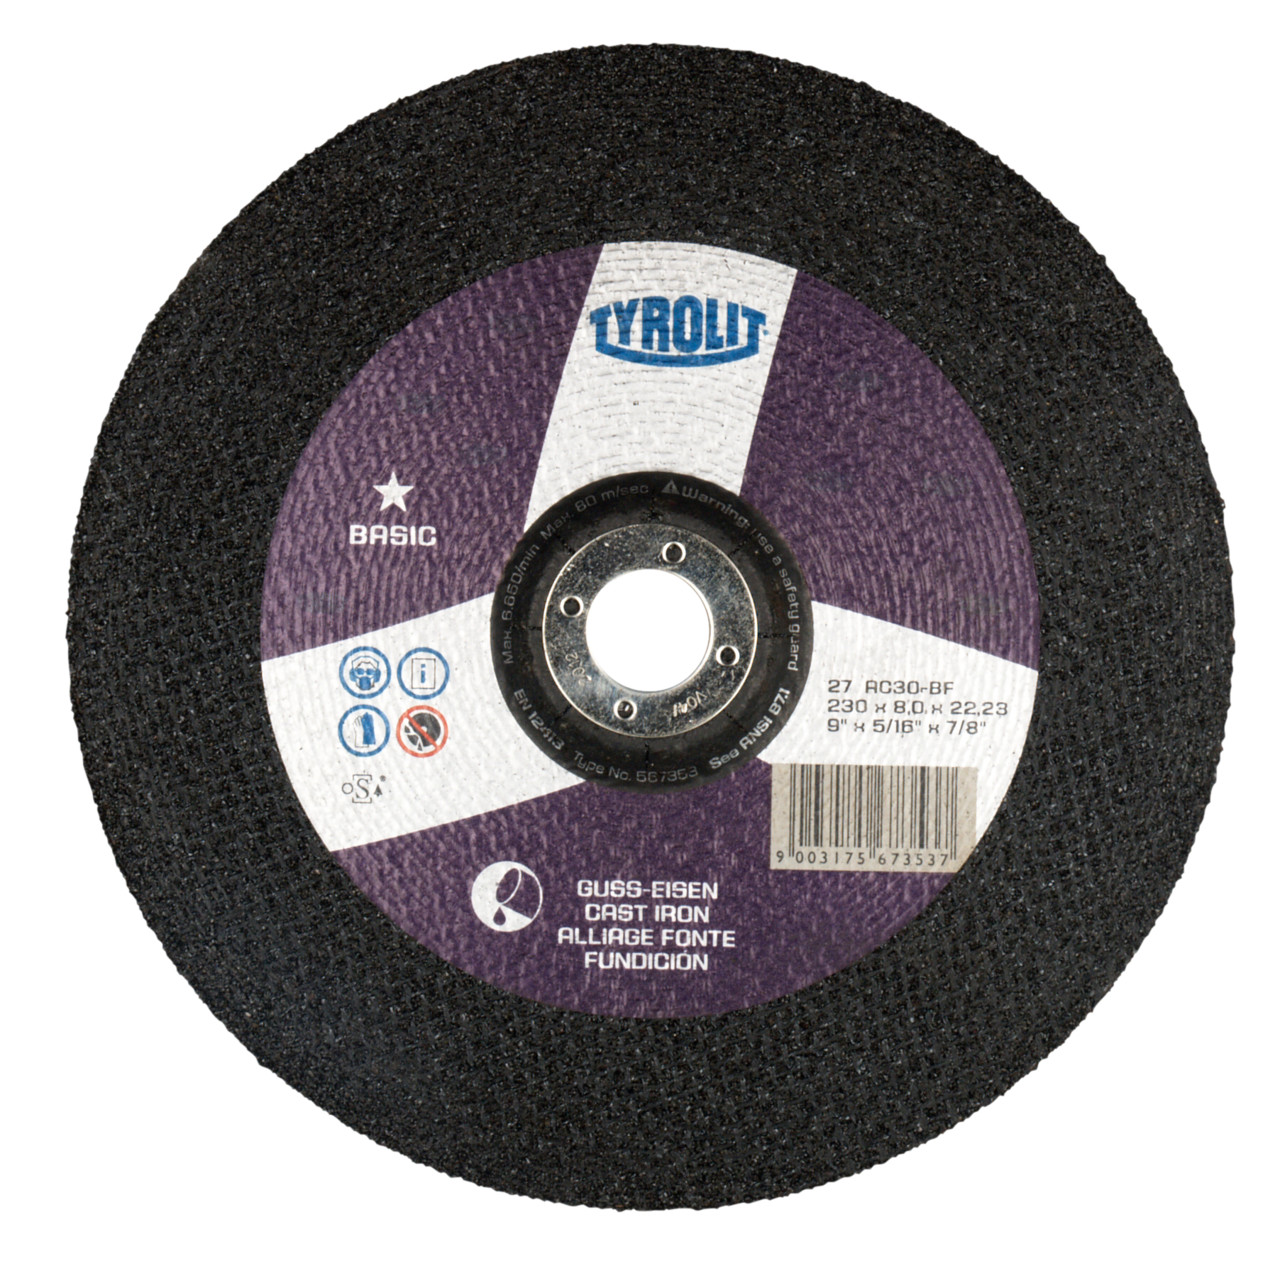 TYROLIT disco de desbaste DxUxH 230x8x22,23 Para fundición gris, forma: 27 - diseño offset, Art. 567353